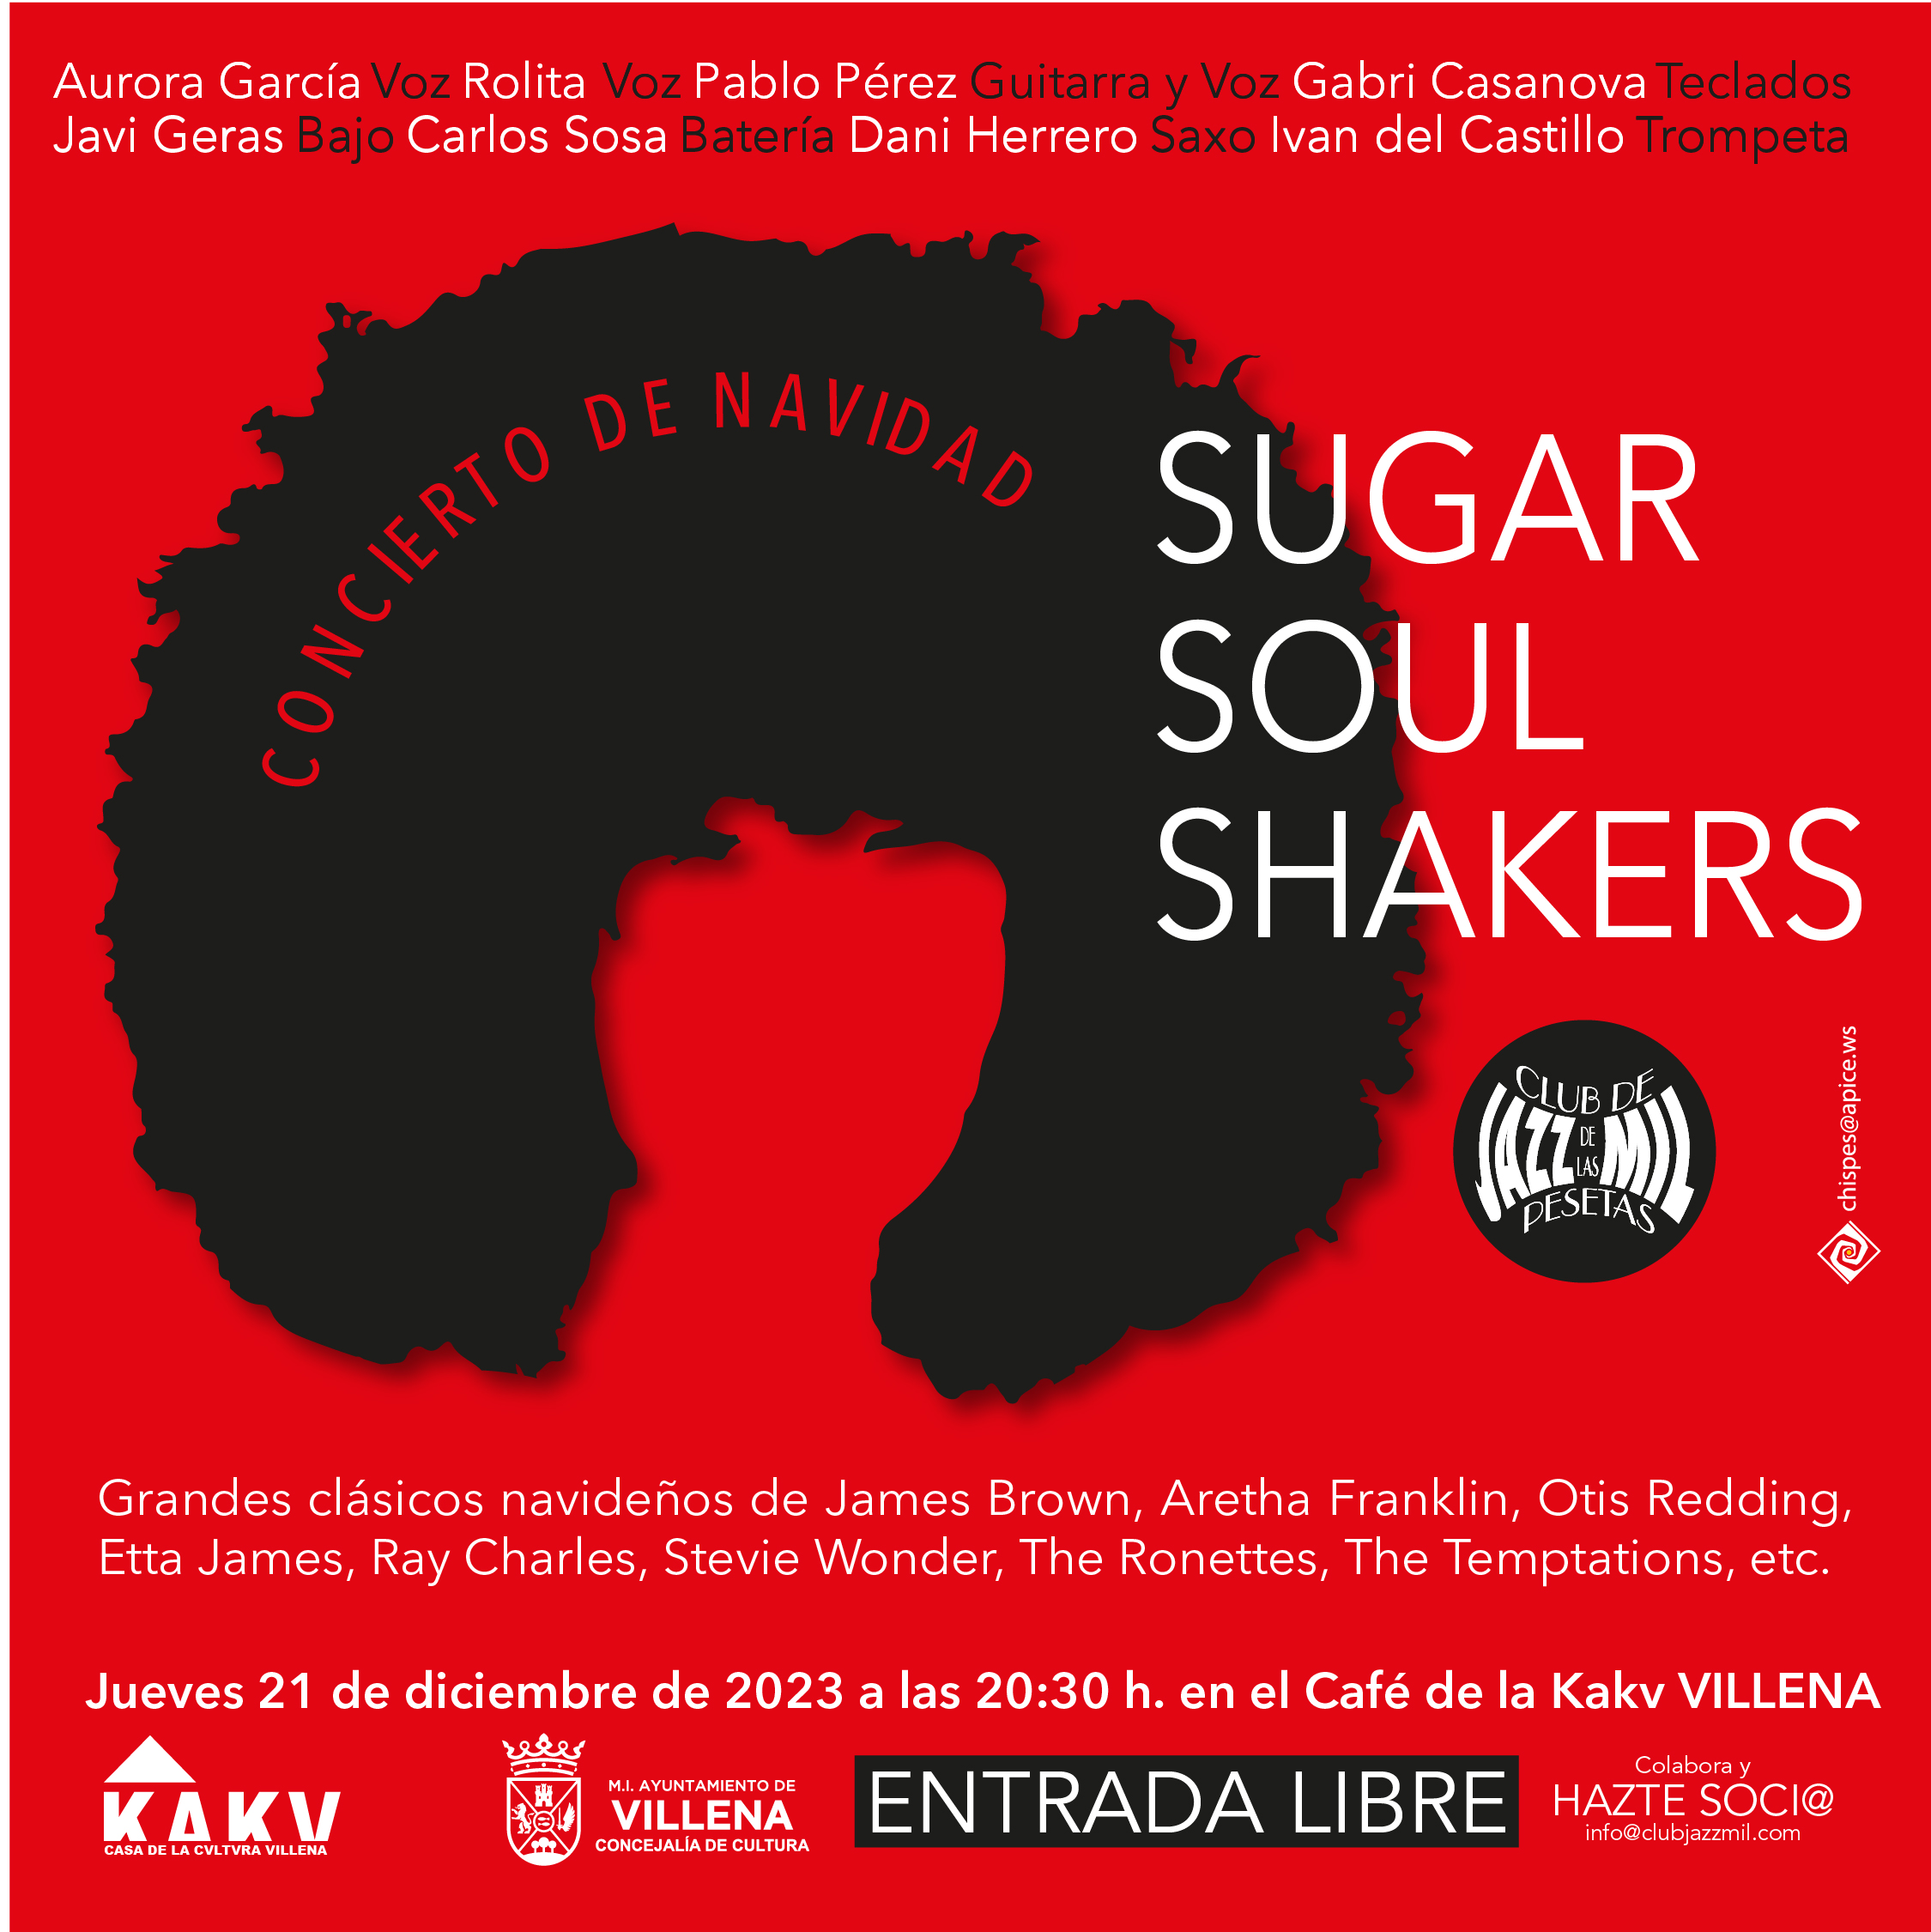 Las grandes figuras del soul español en Villena con el concierto de la mítica “Sugar Soul Shakers”